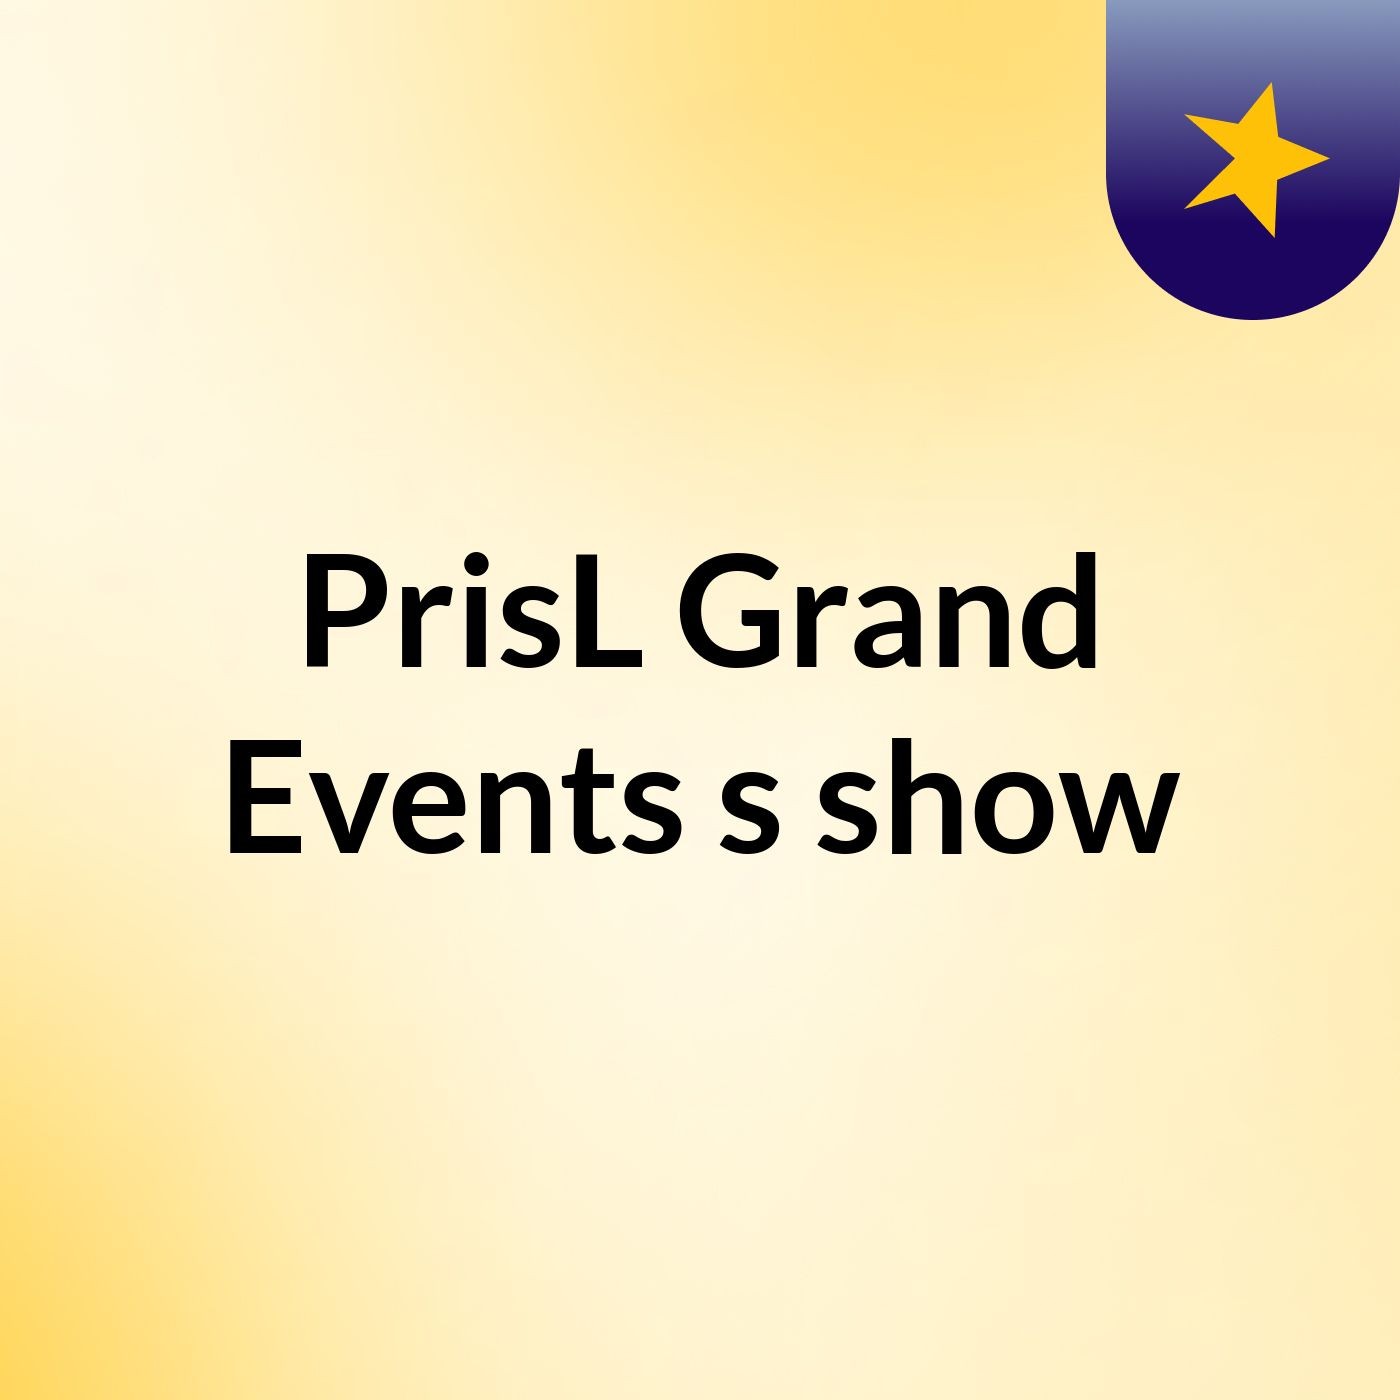 PrisL Grand Events's show